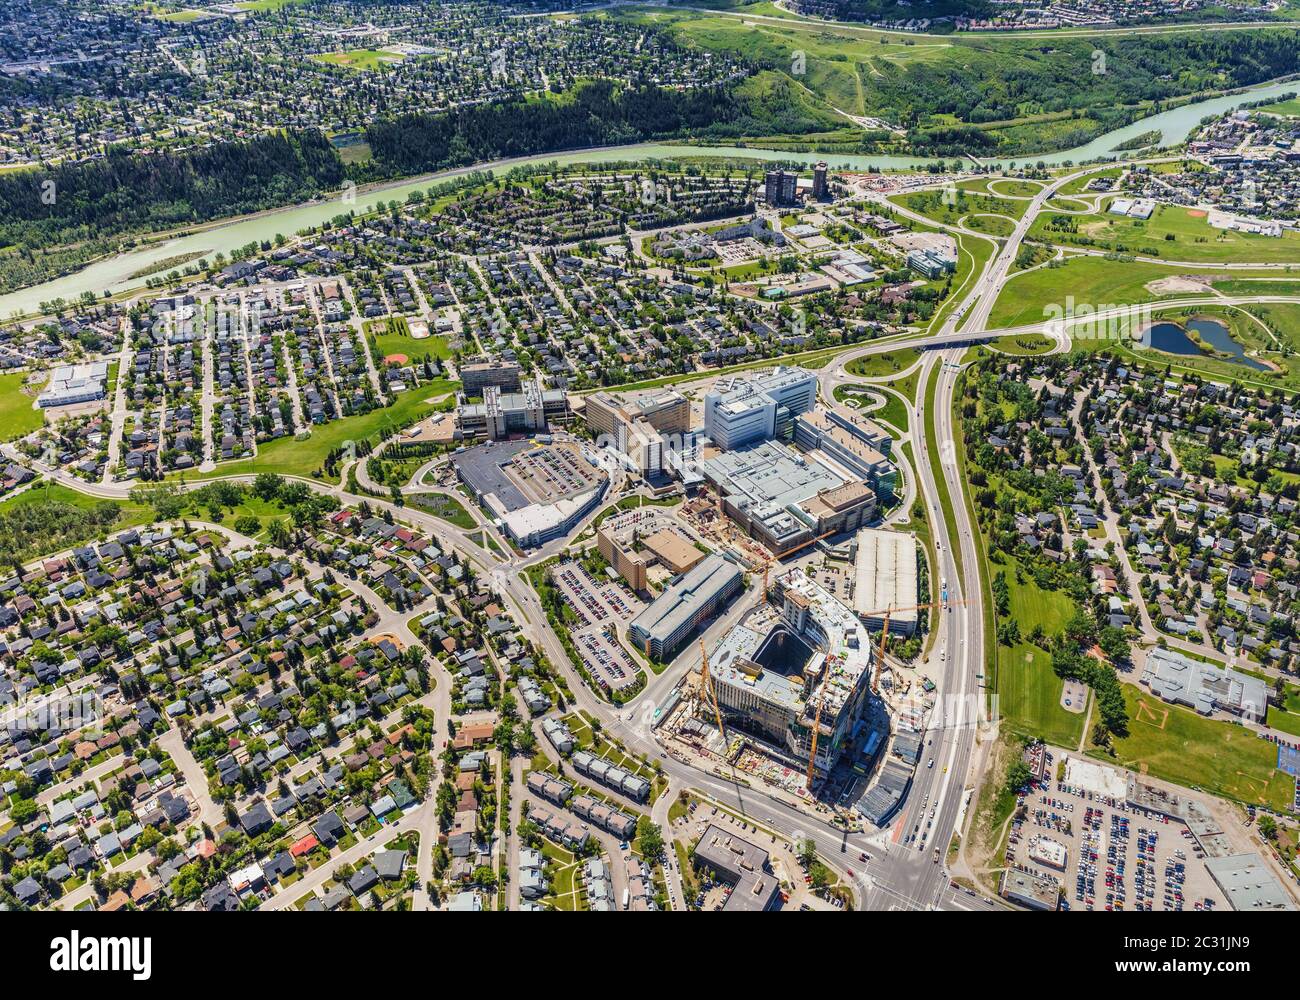 Vista aerea del Foothills Medical Center di Calgary, Alberta Canada, con il nuovo centro oncologico in costruzione. Foto Stock